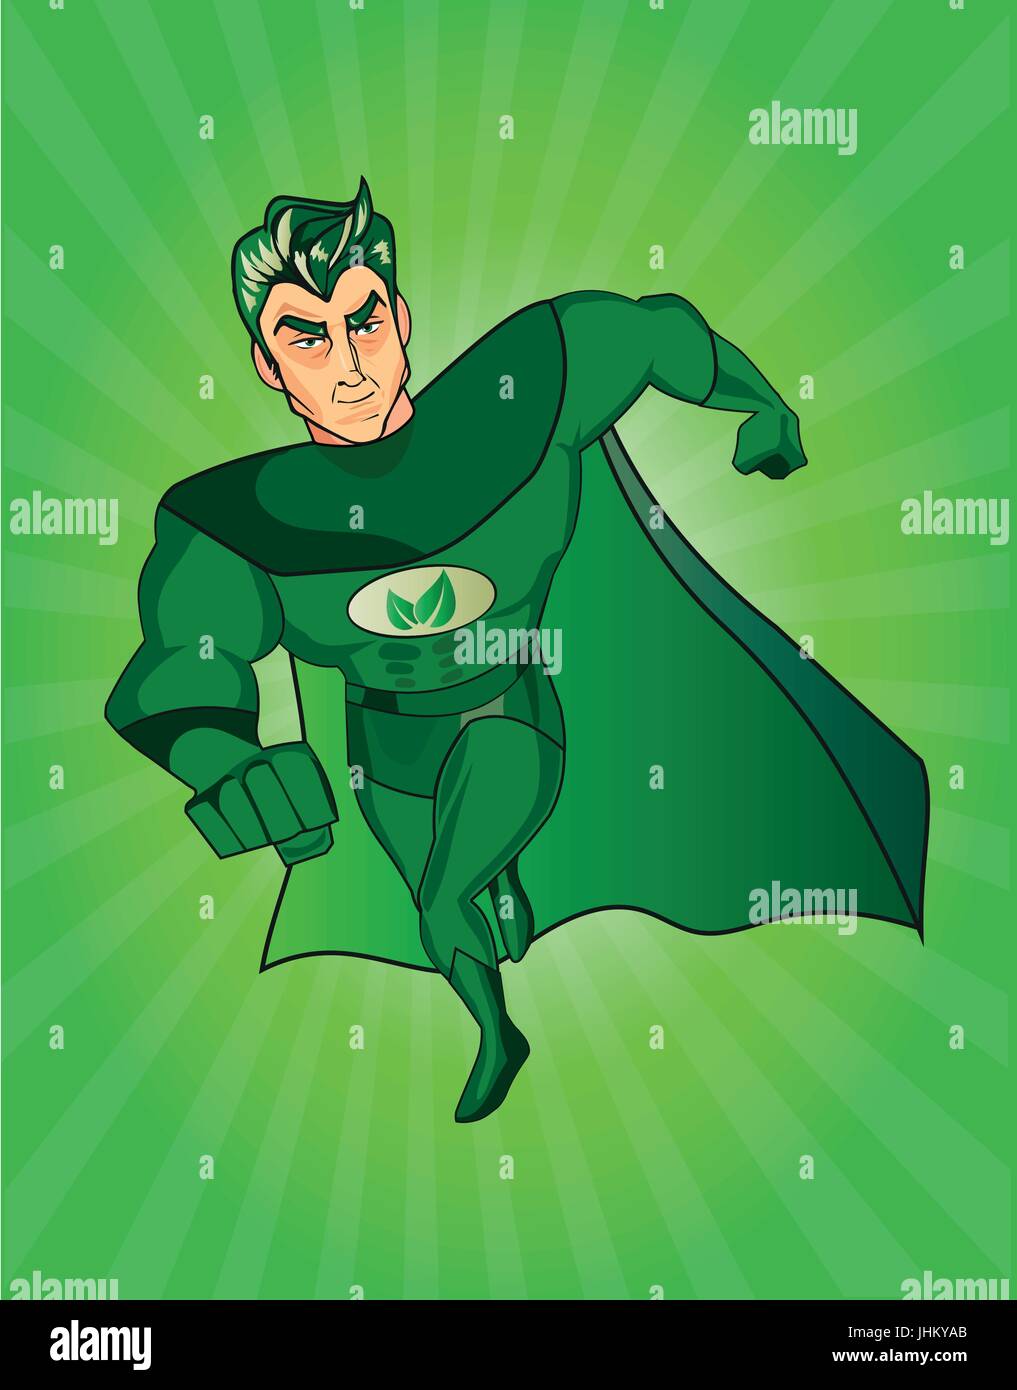 Eine Comicfigur Superheld mit einem grünen Umhang und Kostüm und ein Symbol  auf der Brust Blätter Stock-Vektorgrafik - Alamy